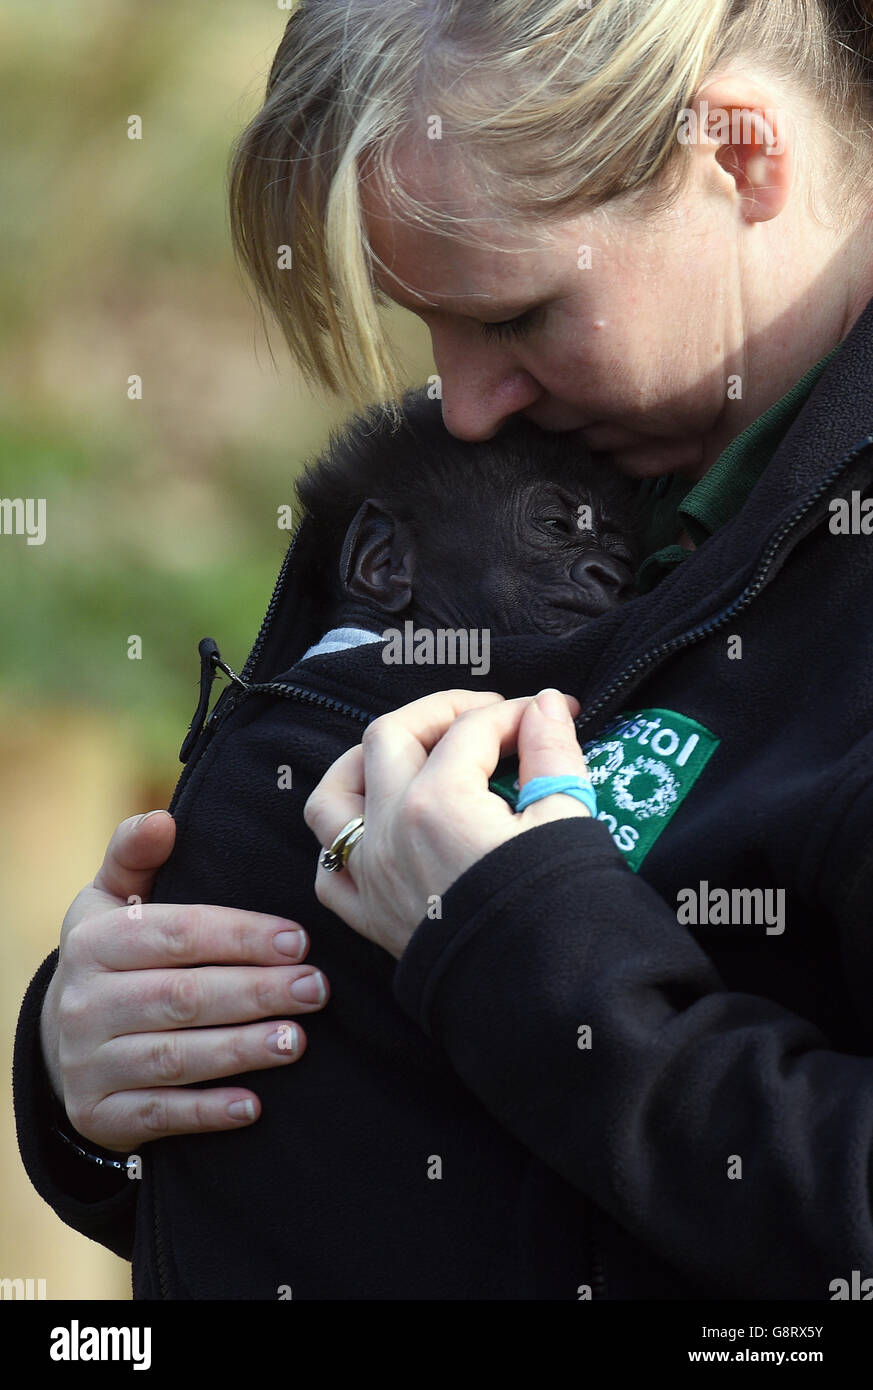 Il gorilla Afia, bambino di sette settimane dello zoo di Bristol, nato dalla sezione cesarean di emergenza, emerge per la prima volta all'esterno in un'imbragatura indossata dal suo guardiano Lynsey Bugg, assistente curatore dei mammiferi. Foto Stock